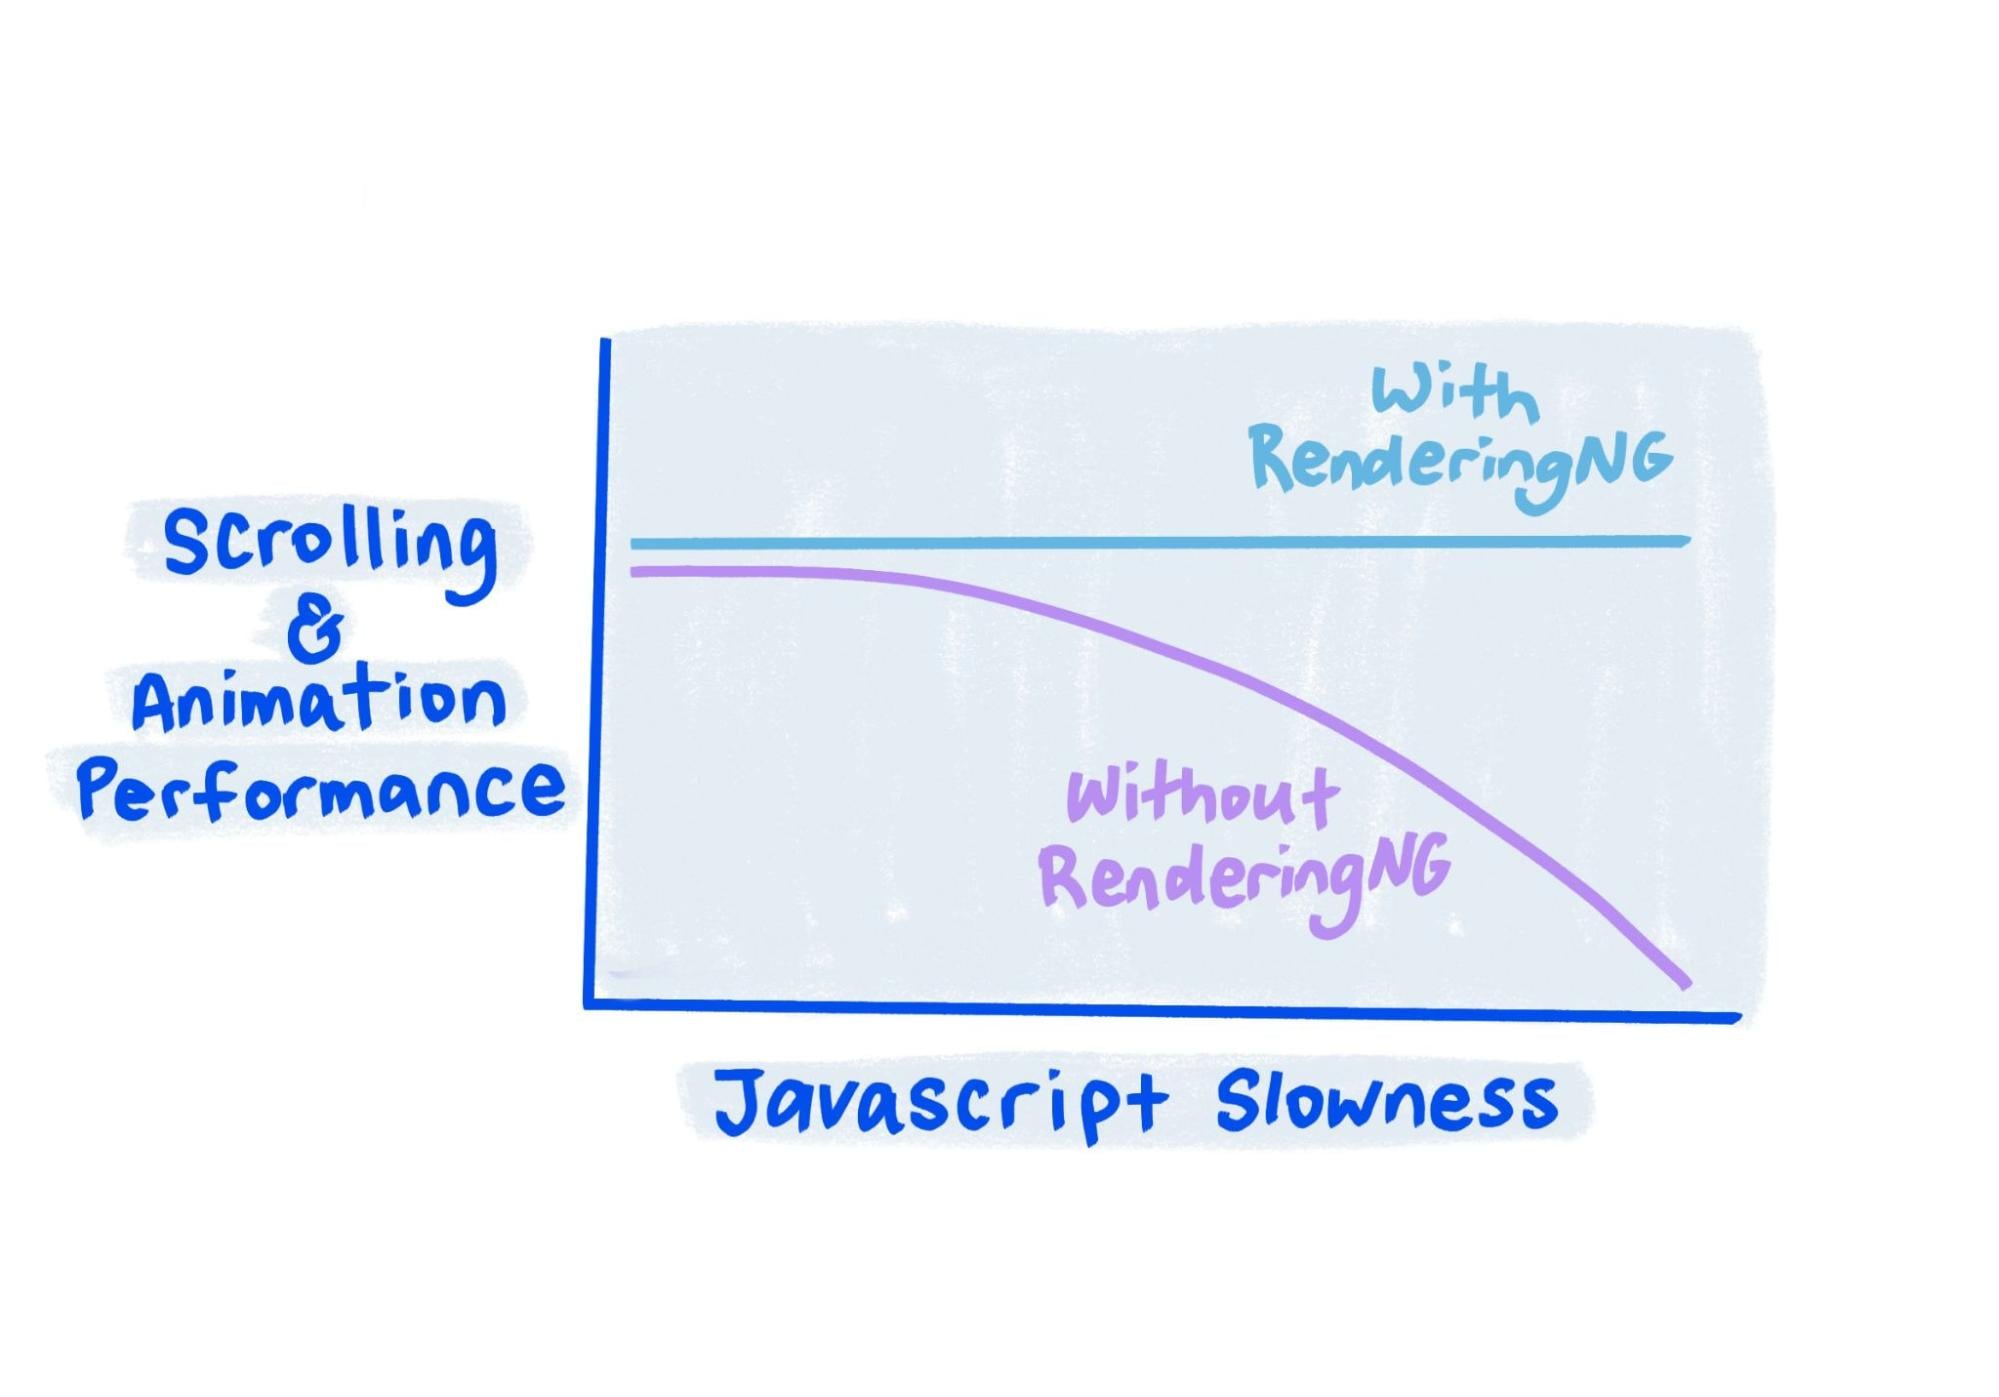 Sketsa menunjukkan bahwa dengan performa RenderingNG tetap solid bahkan saat JavaScript sangat lambat.